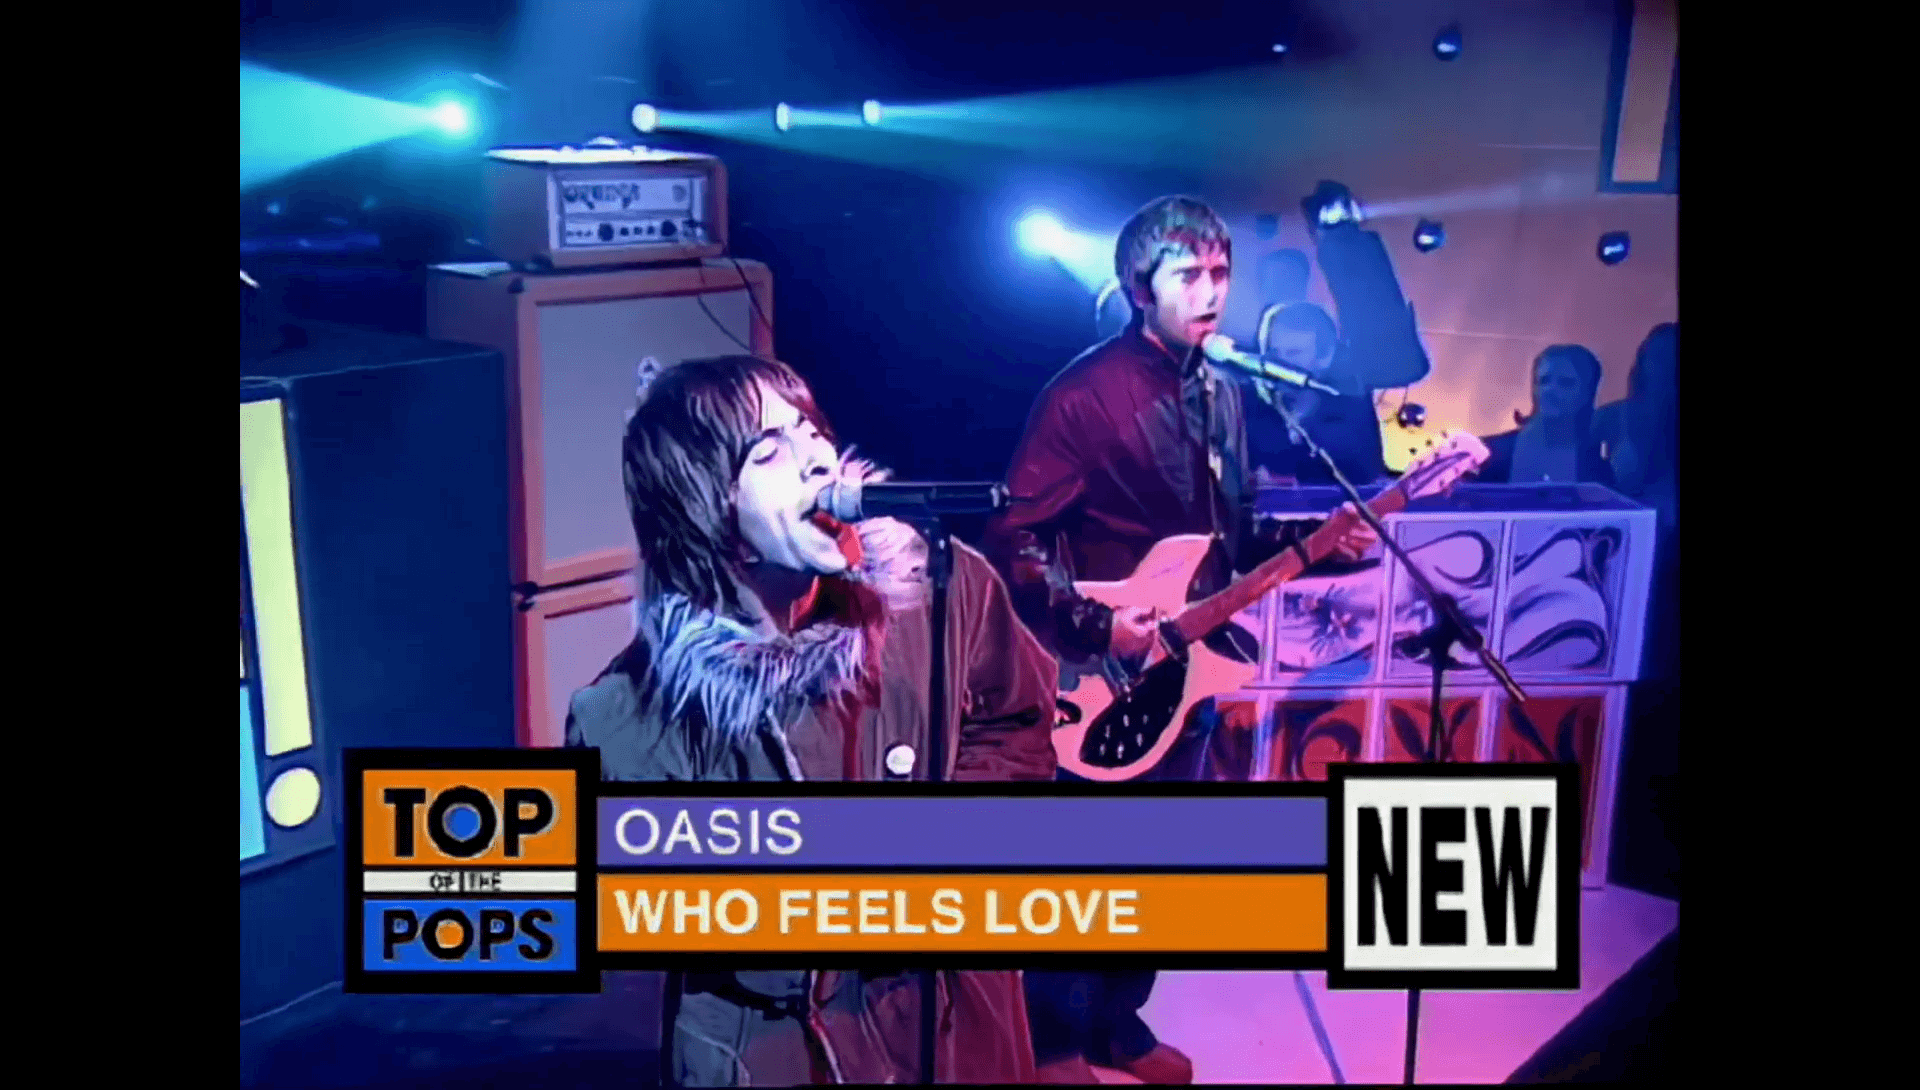 Oasis at Elstree Studios, London - April 21, 2000